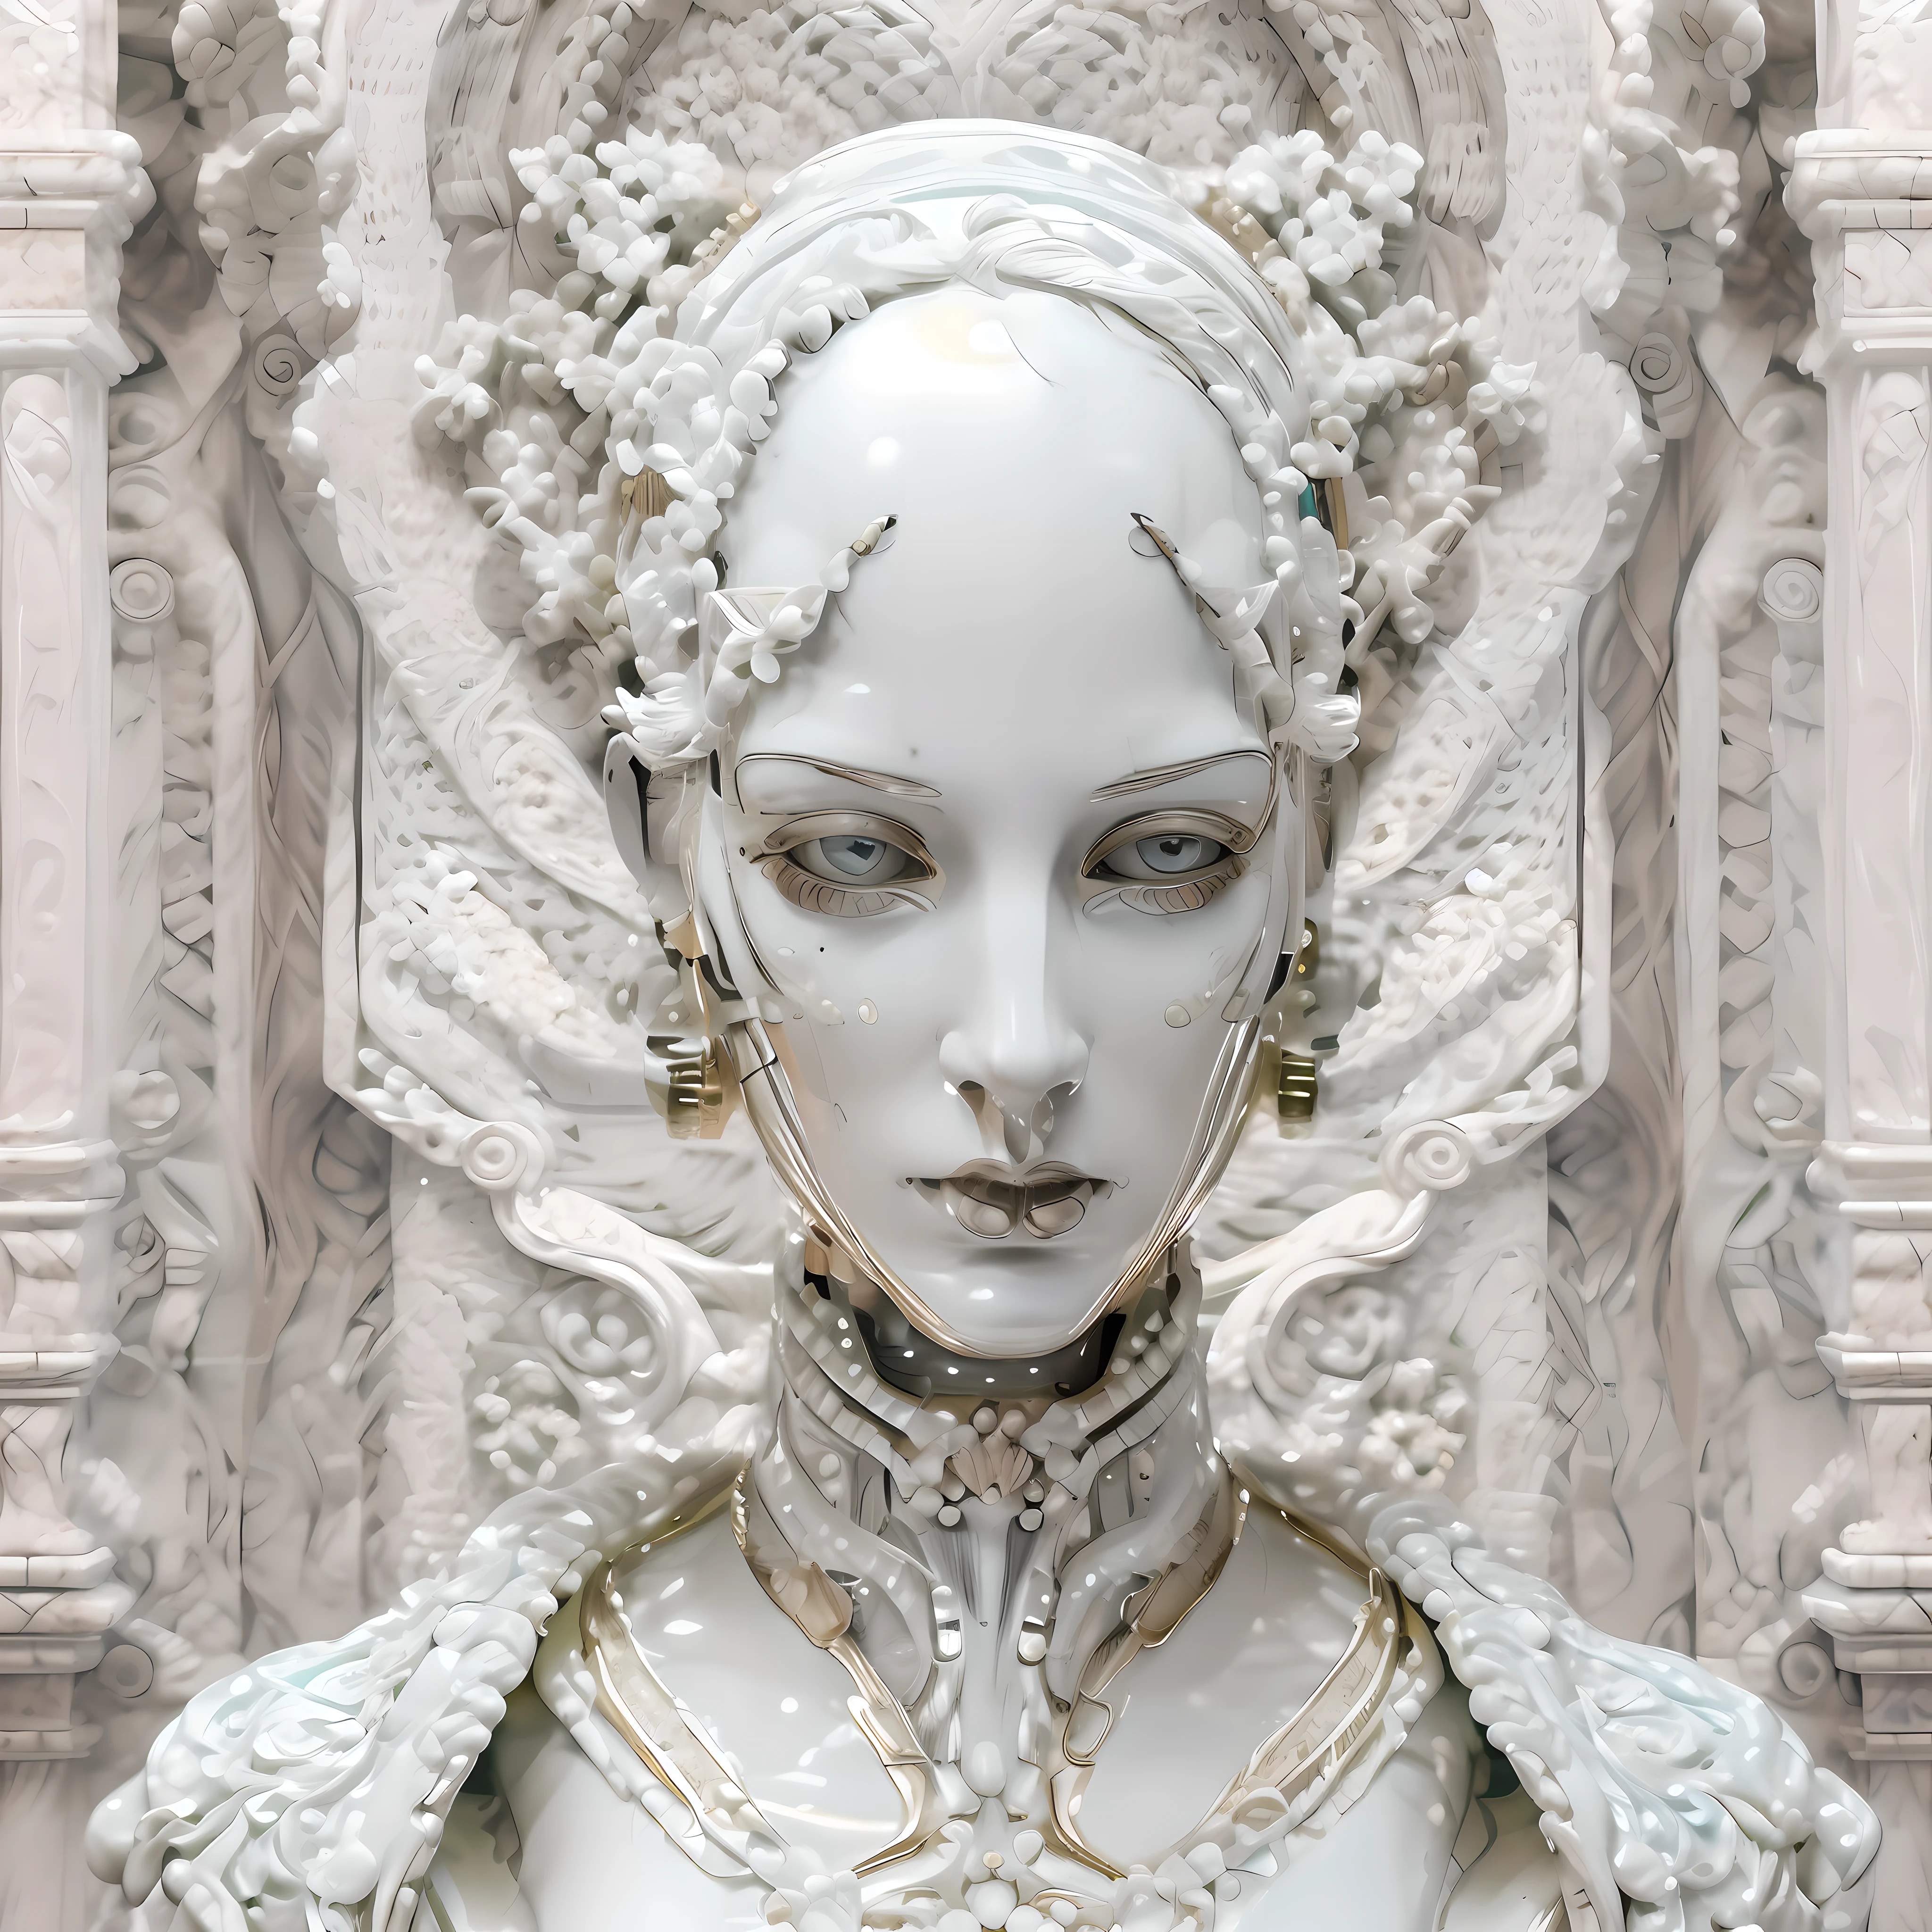 (((美麗的))) 對稱女性機器人, 具有強烈的雌雄同體的面部特徵, 臉部採用精美的白色大理石瓷器製作和雕刻, 巴洛克美學和裝飾藝術服裝.